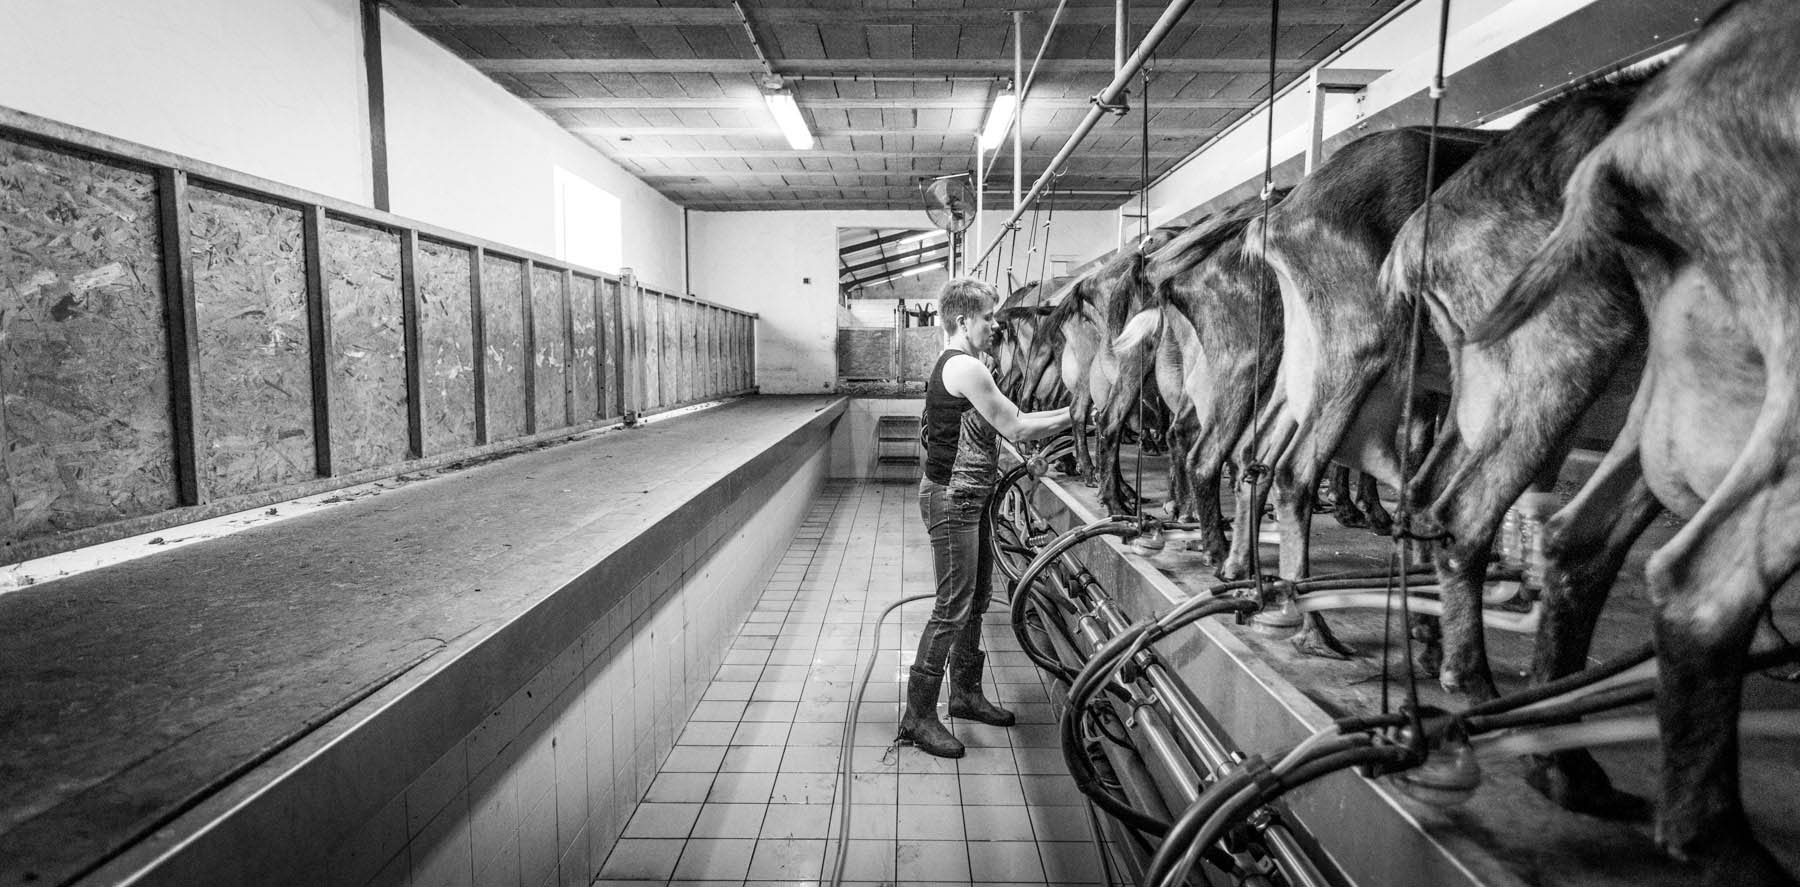 photo de la salle de traite des chèvres de la ferme garralda au pays basque par Carole photographe d'entreprise